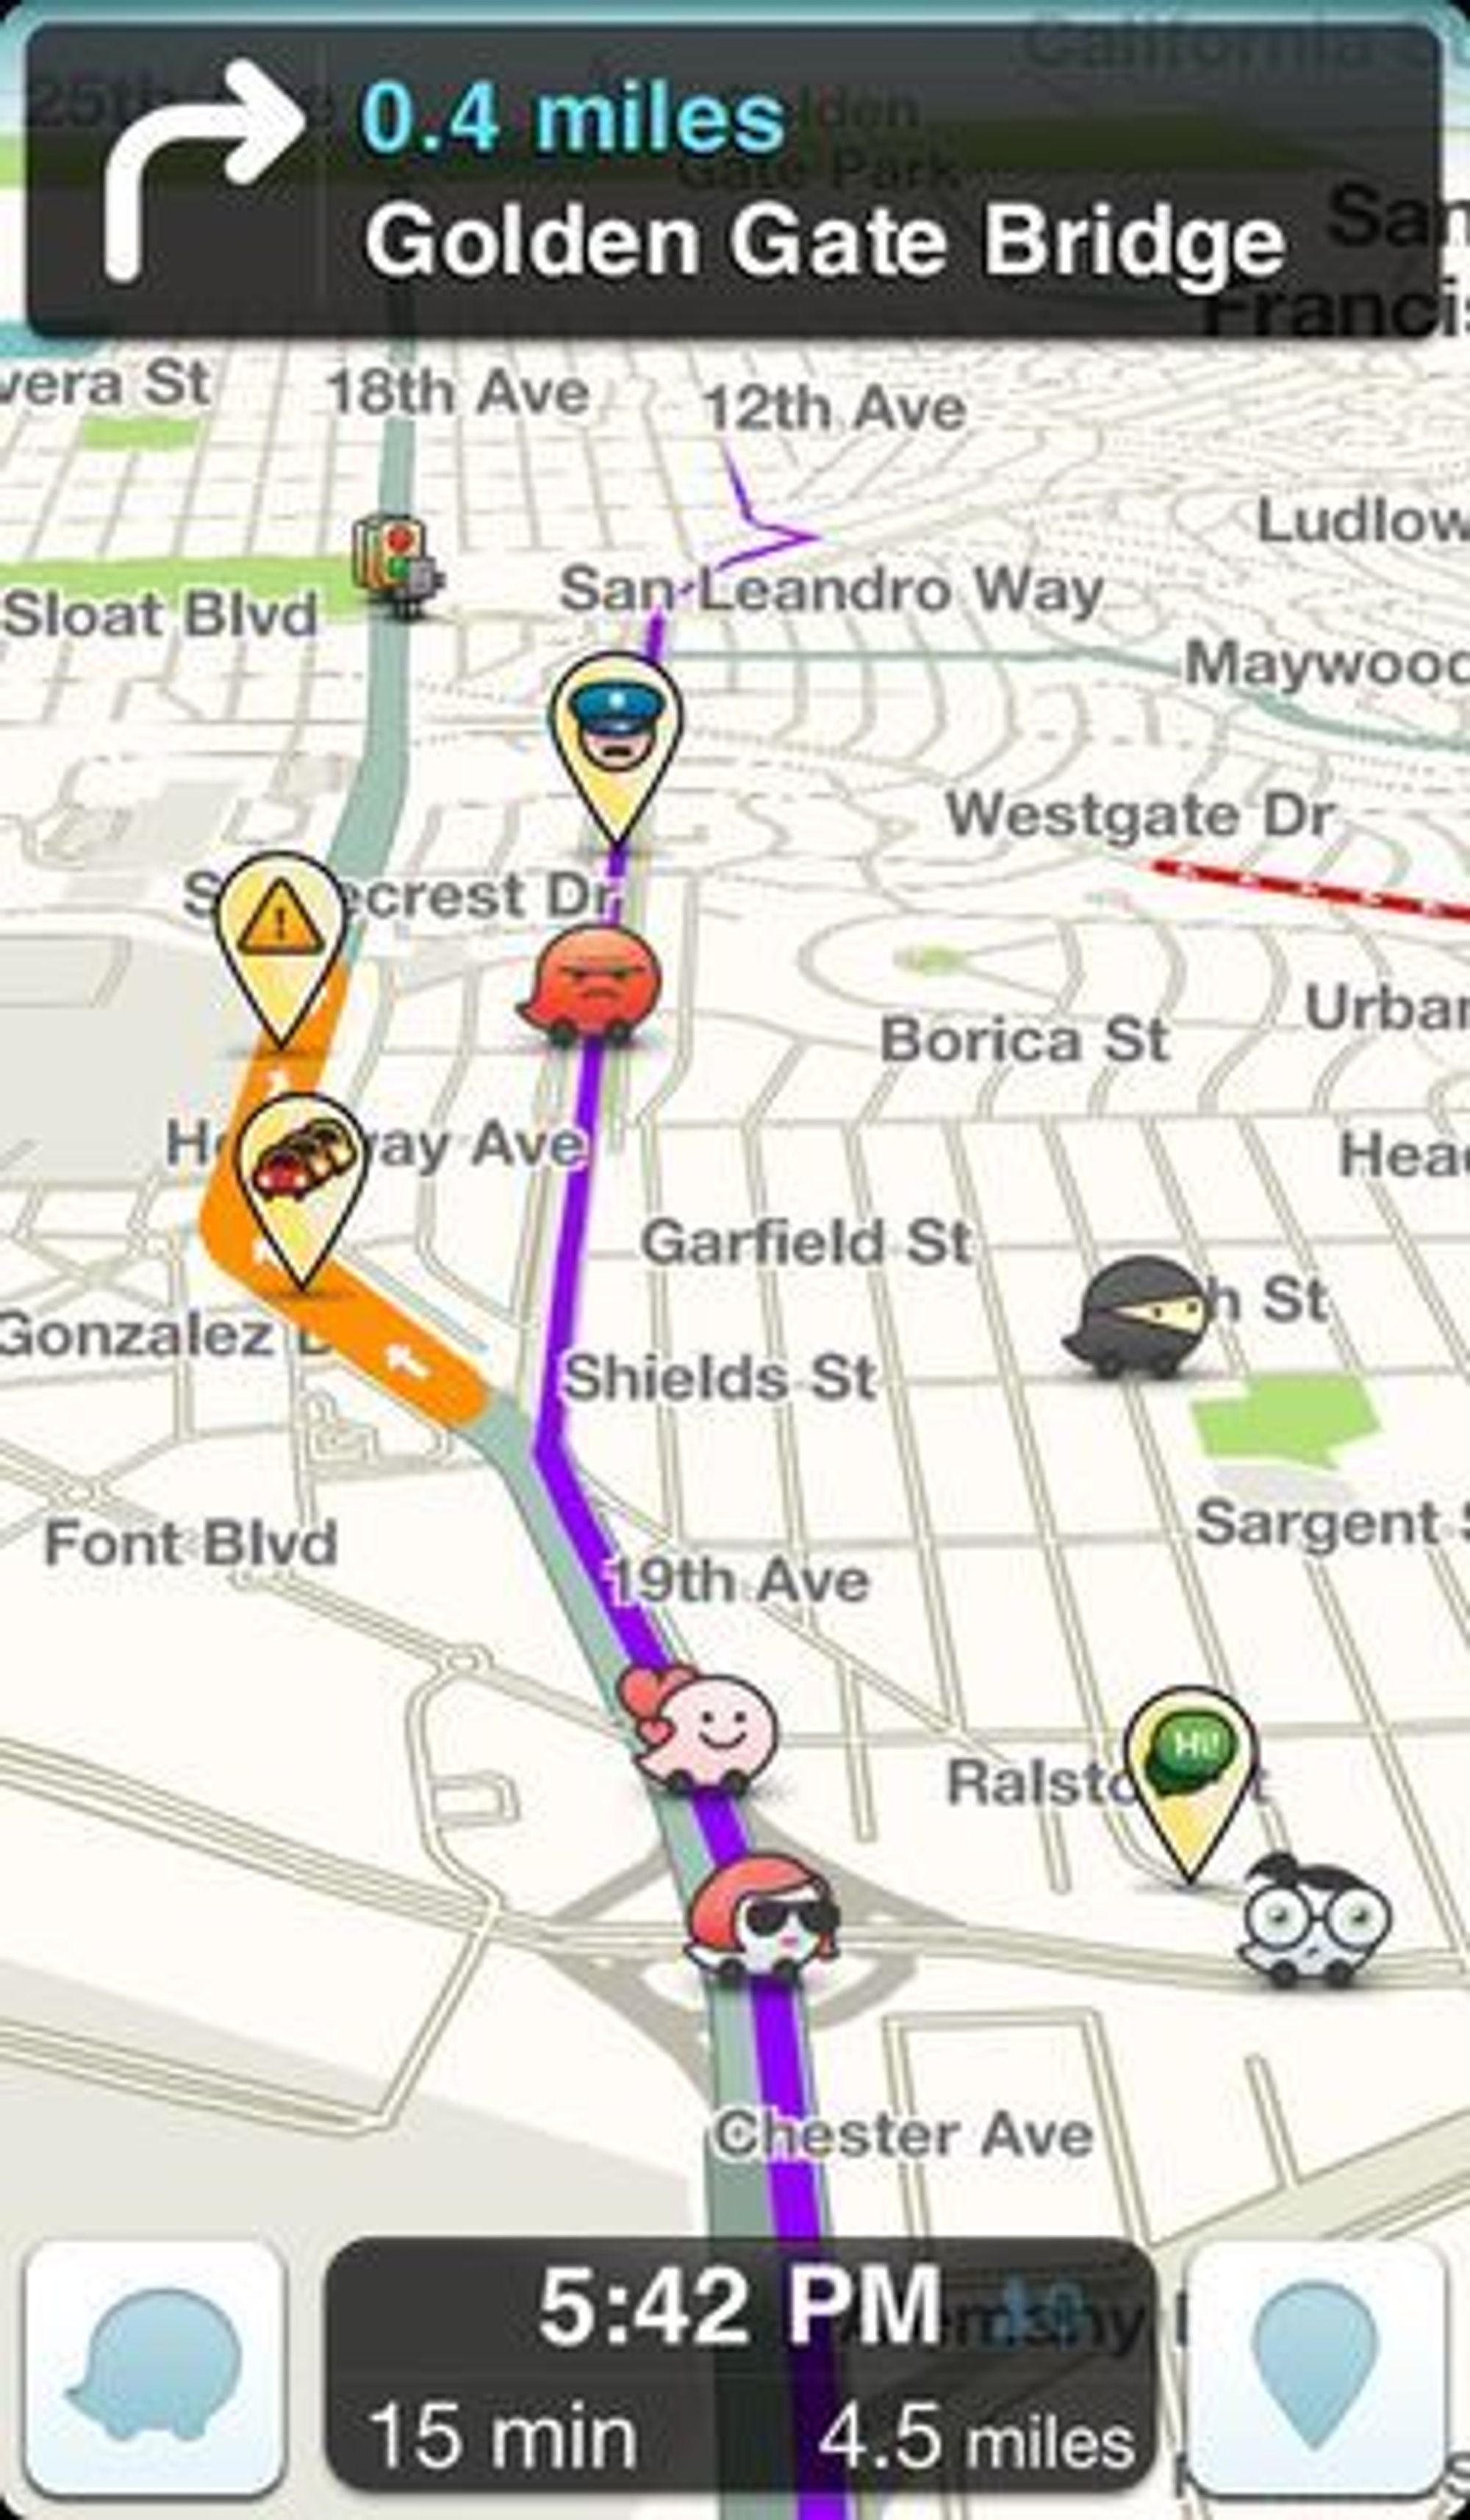 Waze-applikasjonen viser på kartet hvor det finnes ulike hindringer i veien, inkludert politikontroller og kø.